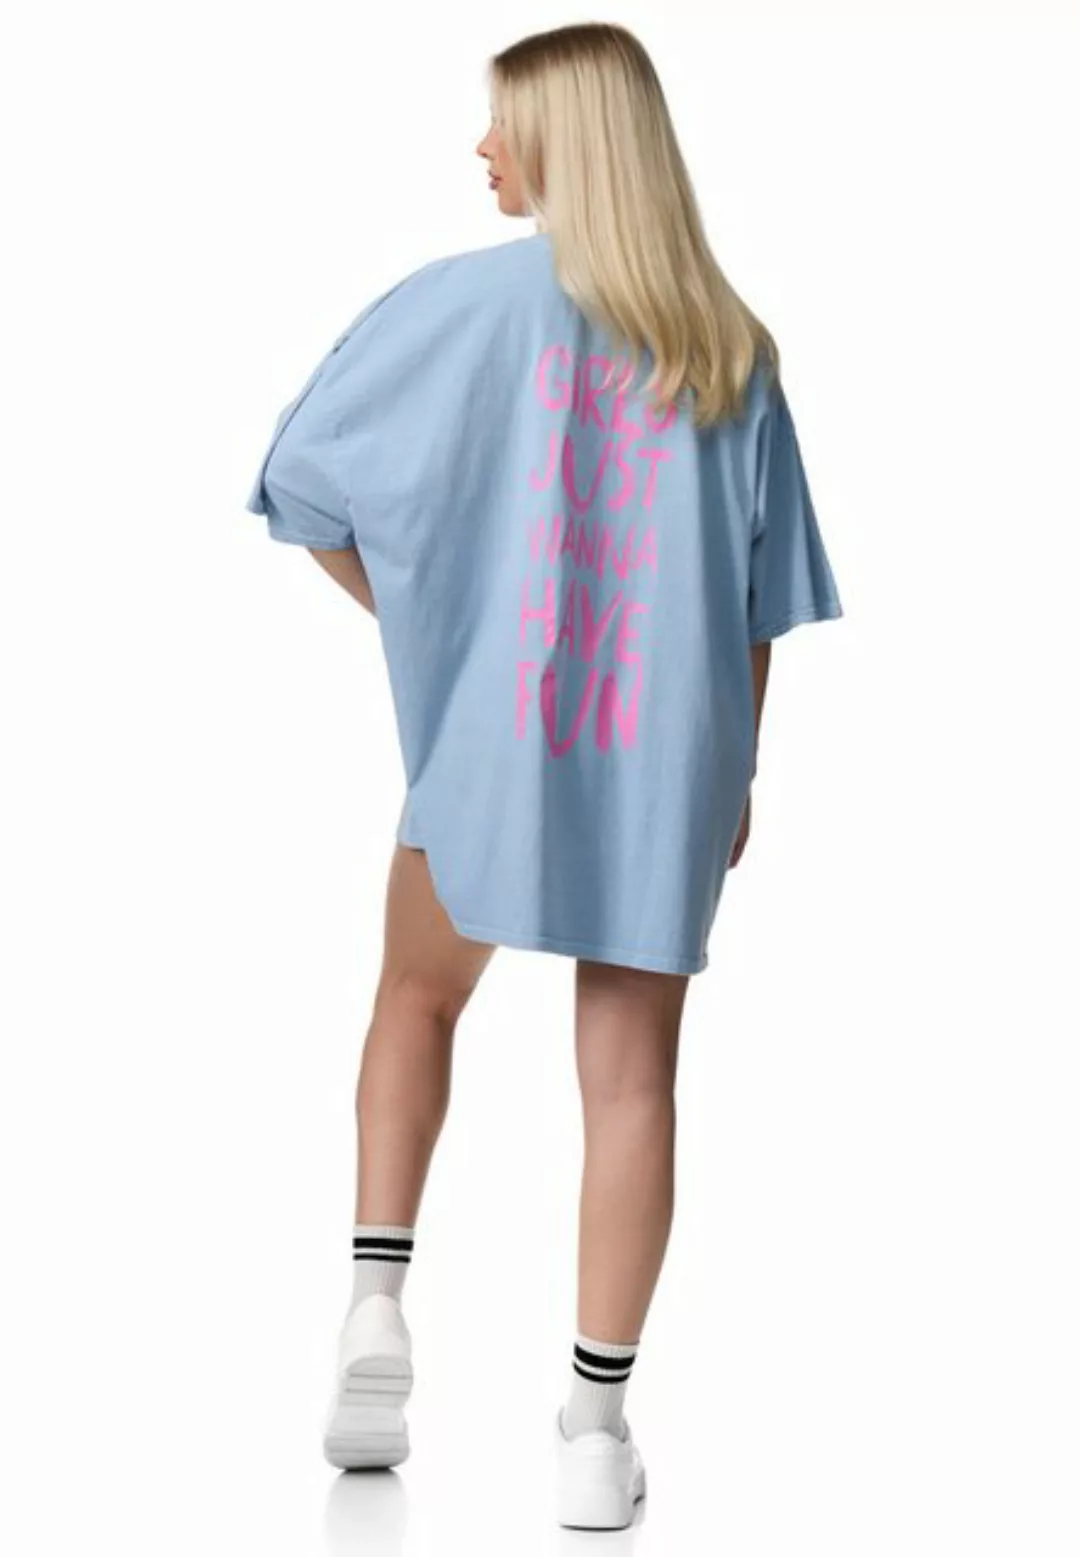 Worldclassca T-Shirt Worldclassca Oversized Girls Print T-Shirt lang Tee So günstig online kaufen